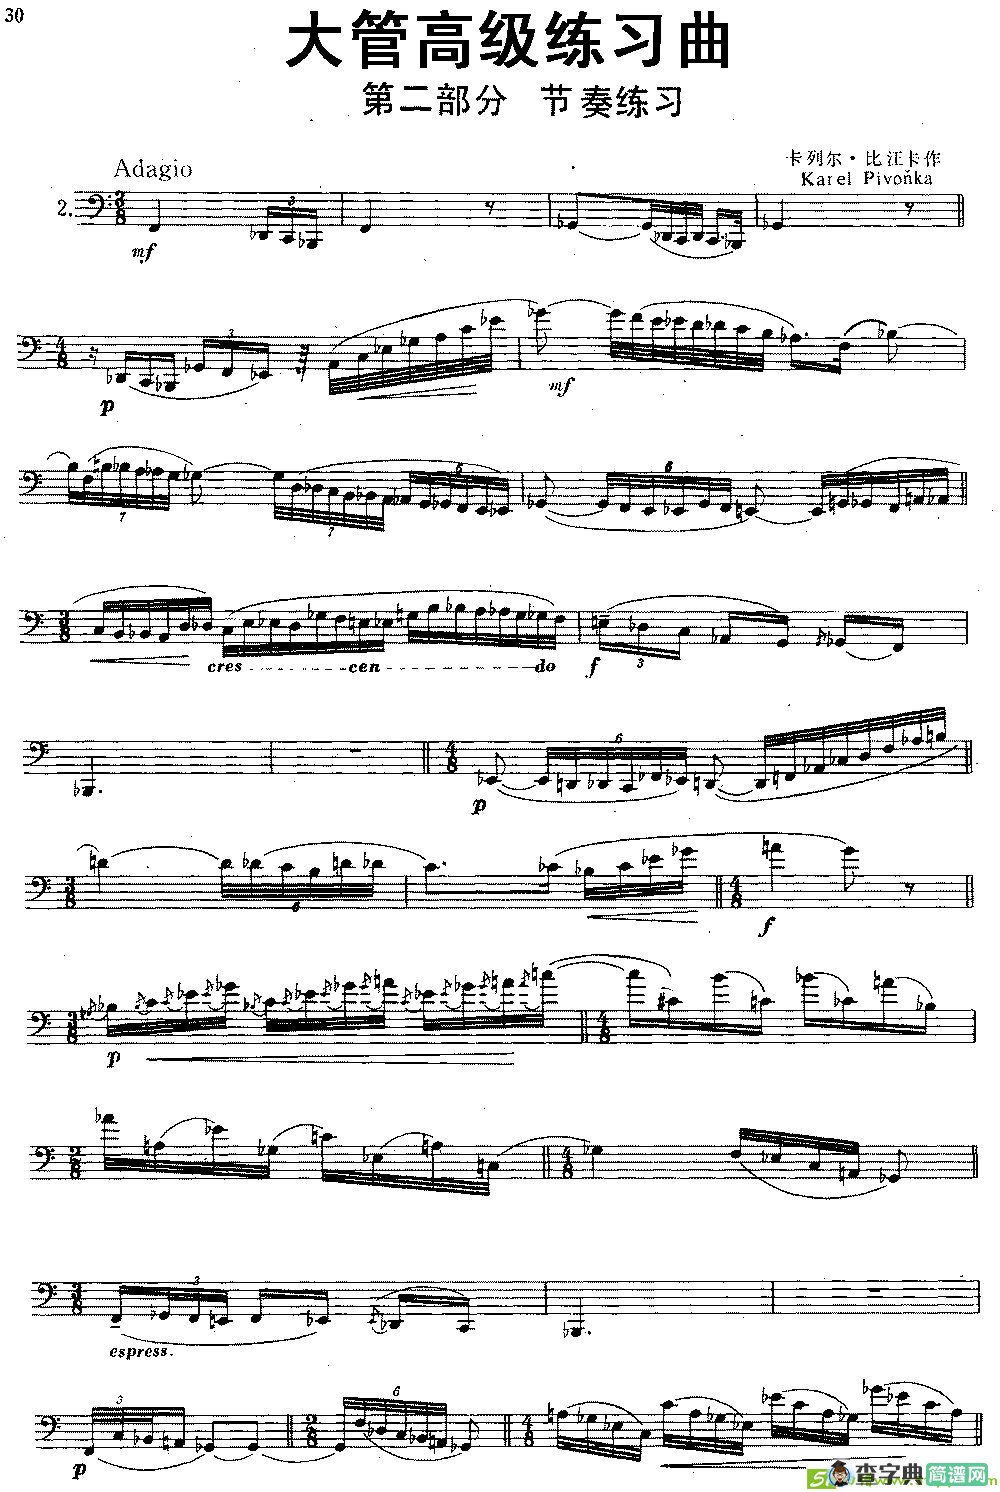 大管高级练习曲 第二部分 节奏练习铜管谱(卡列尔·比汪卡作曲)